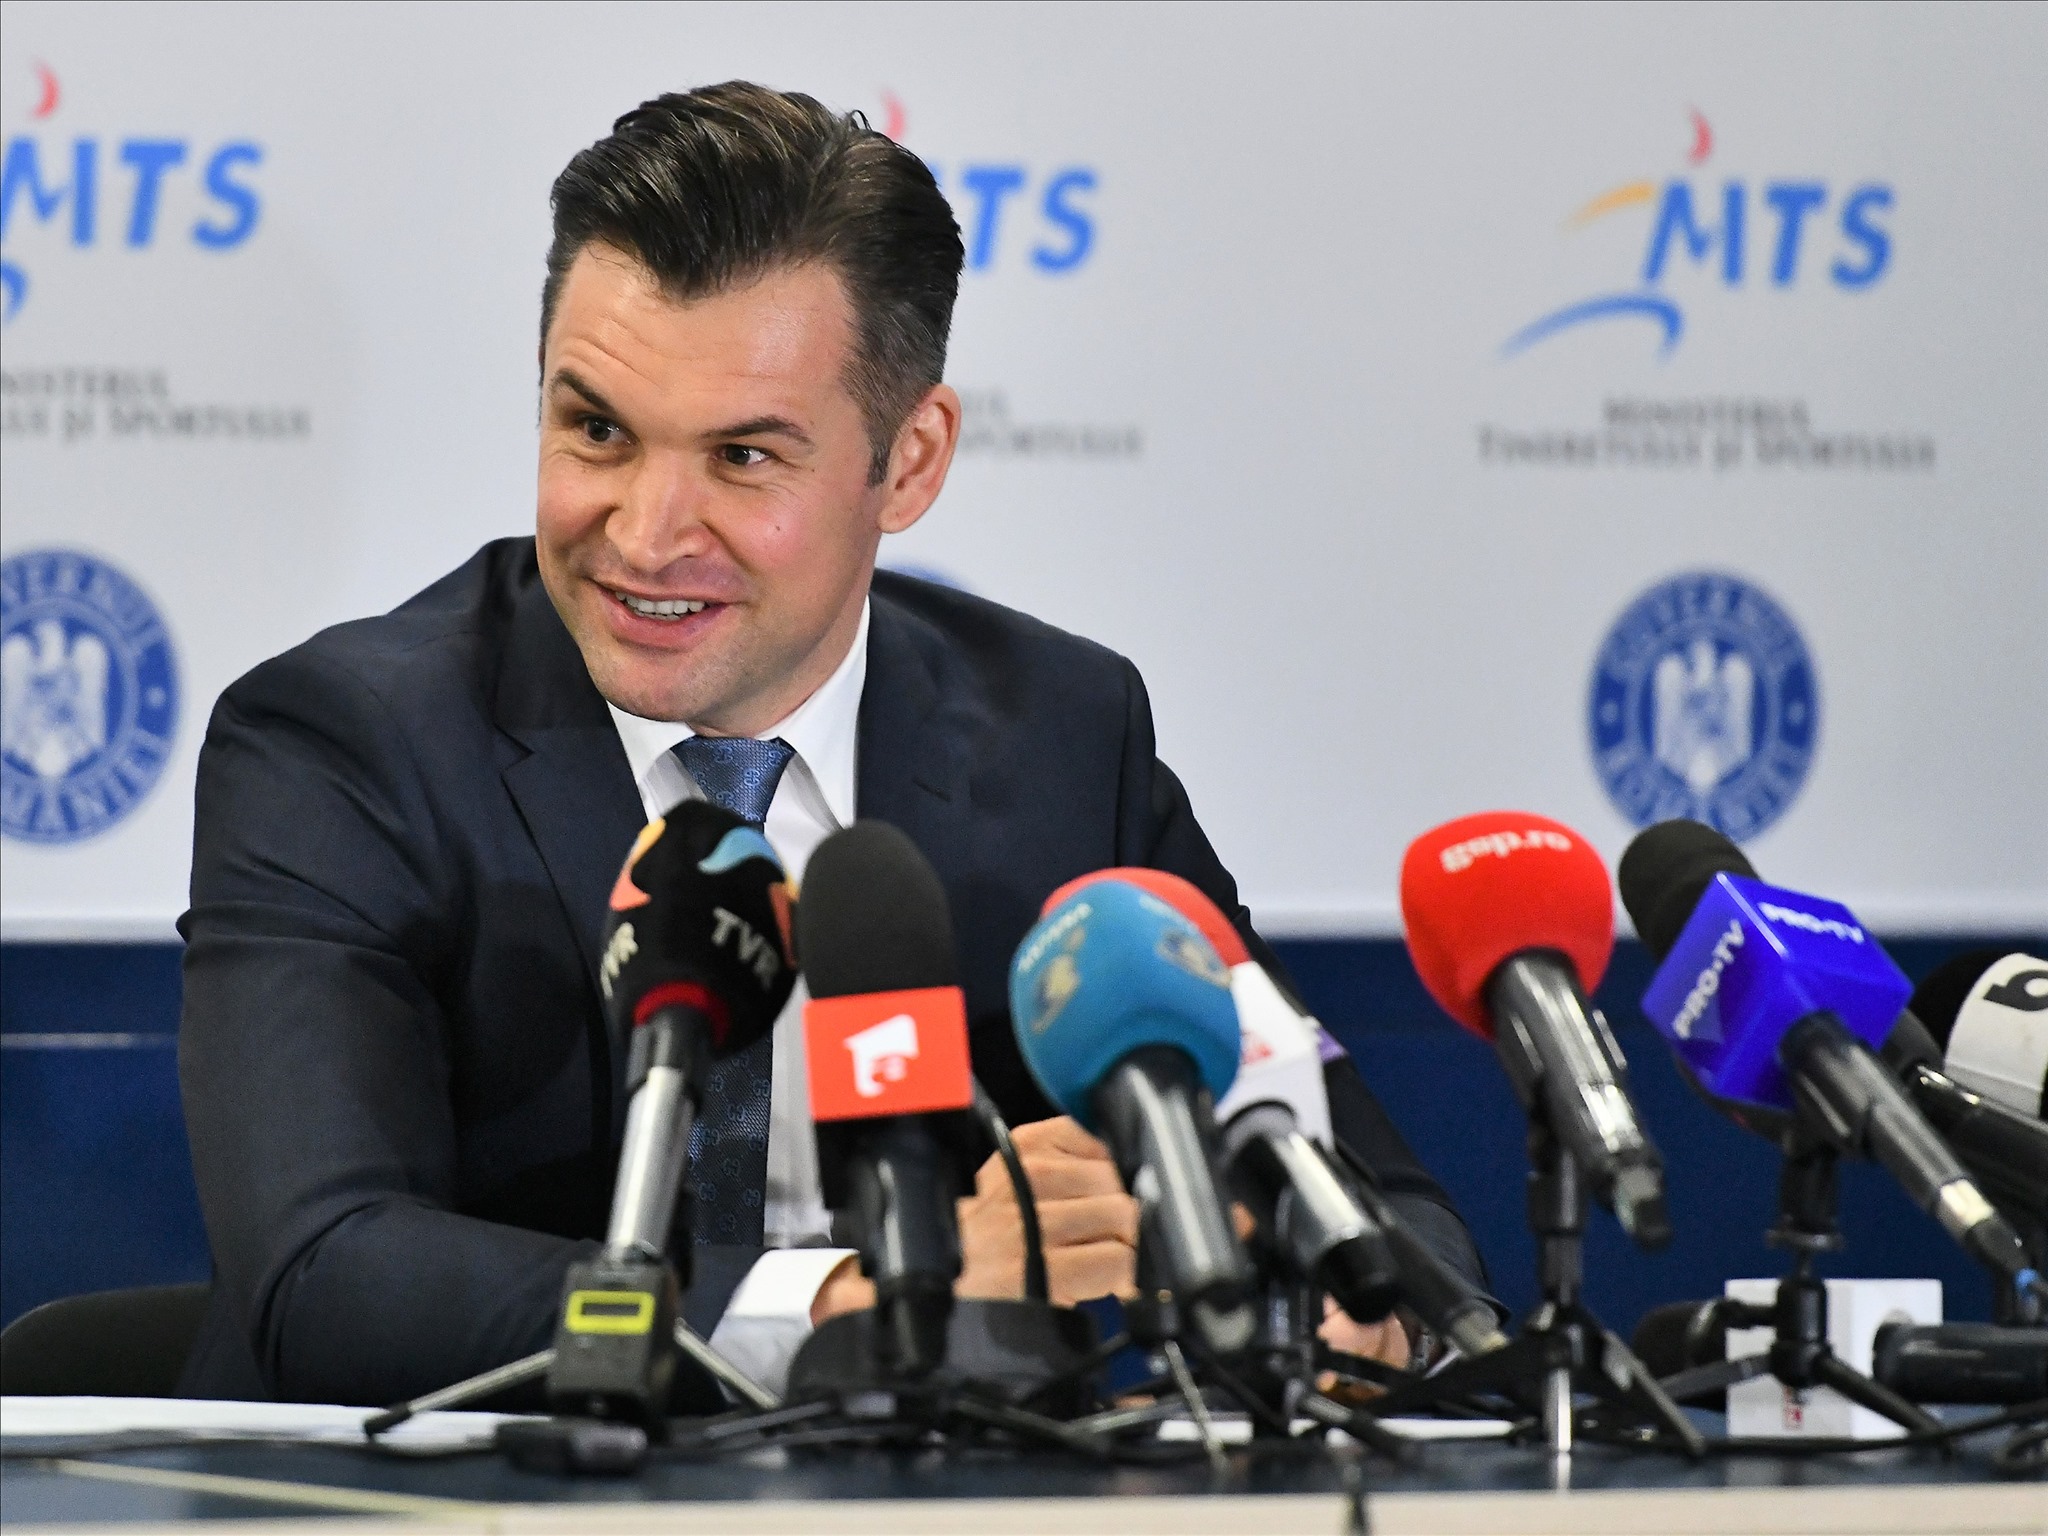 Ionuț Stroe: Companiile cer ca economia să fie încurajată, nu formule fiscale care inhibă inițiativa